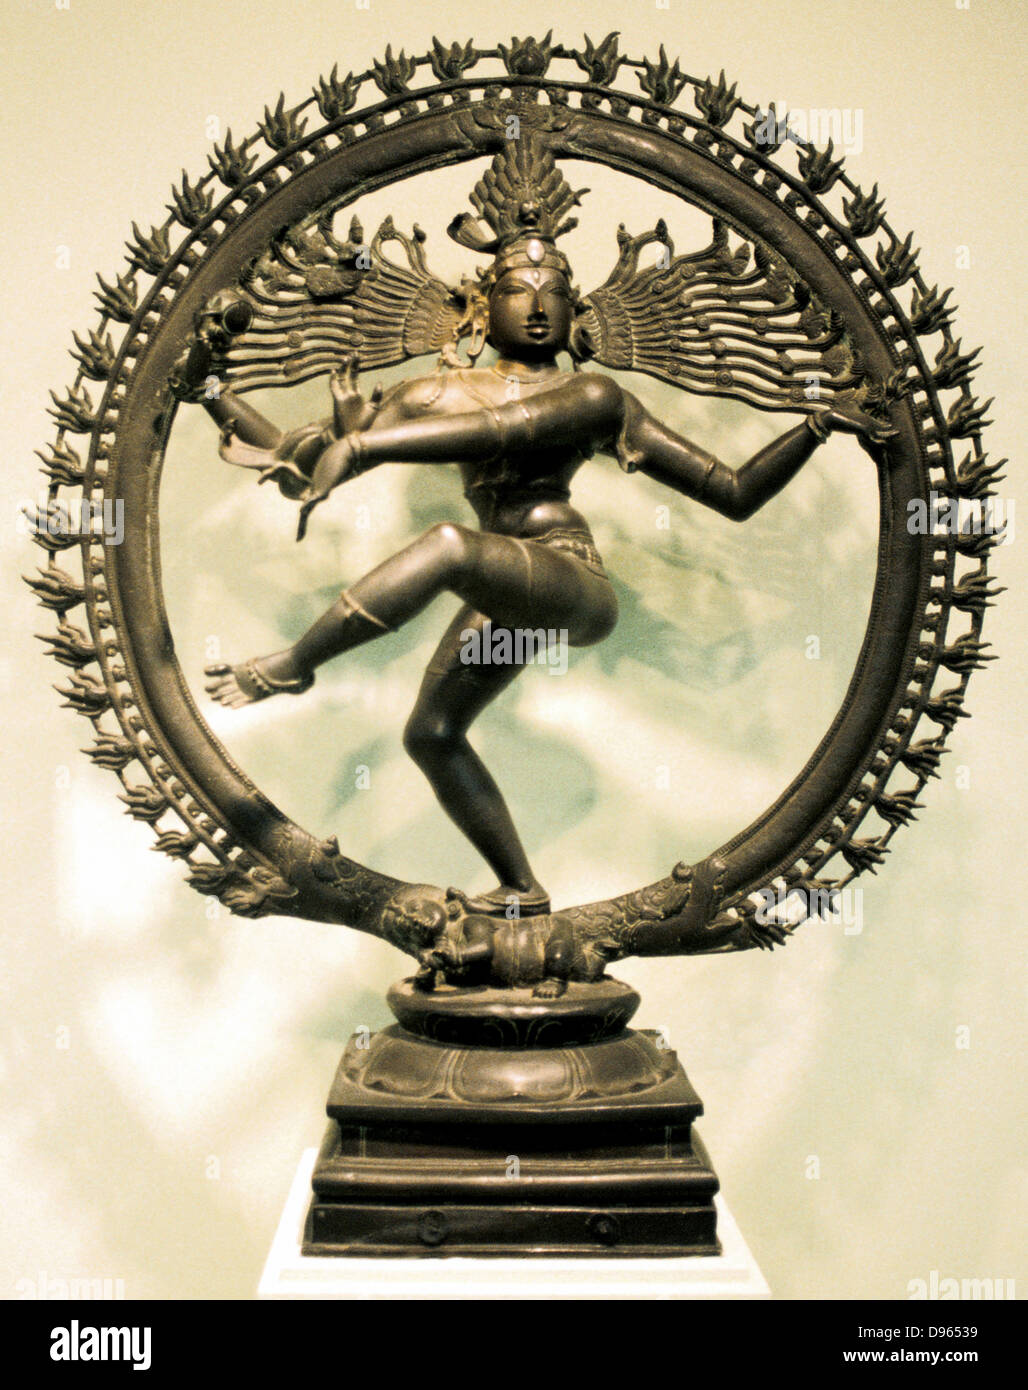 Hindu-Gott Shiva (Shiva). 16. Jahrhundert Chloa bronze Darstellung Shivas im Tanz der Schöpfung. Indian. Stockfoto